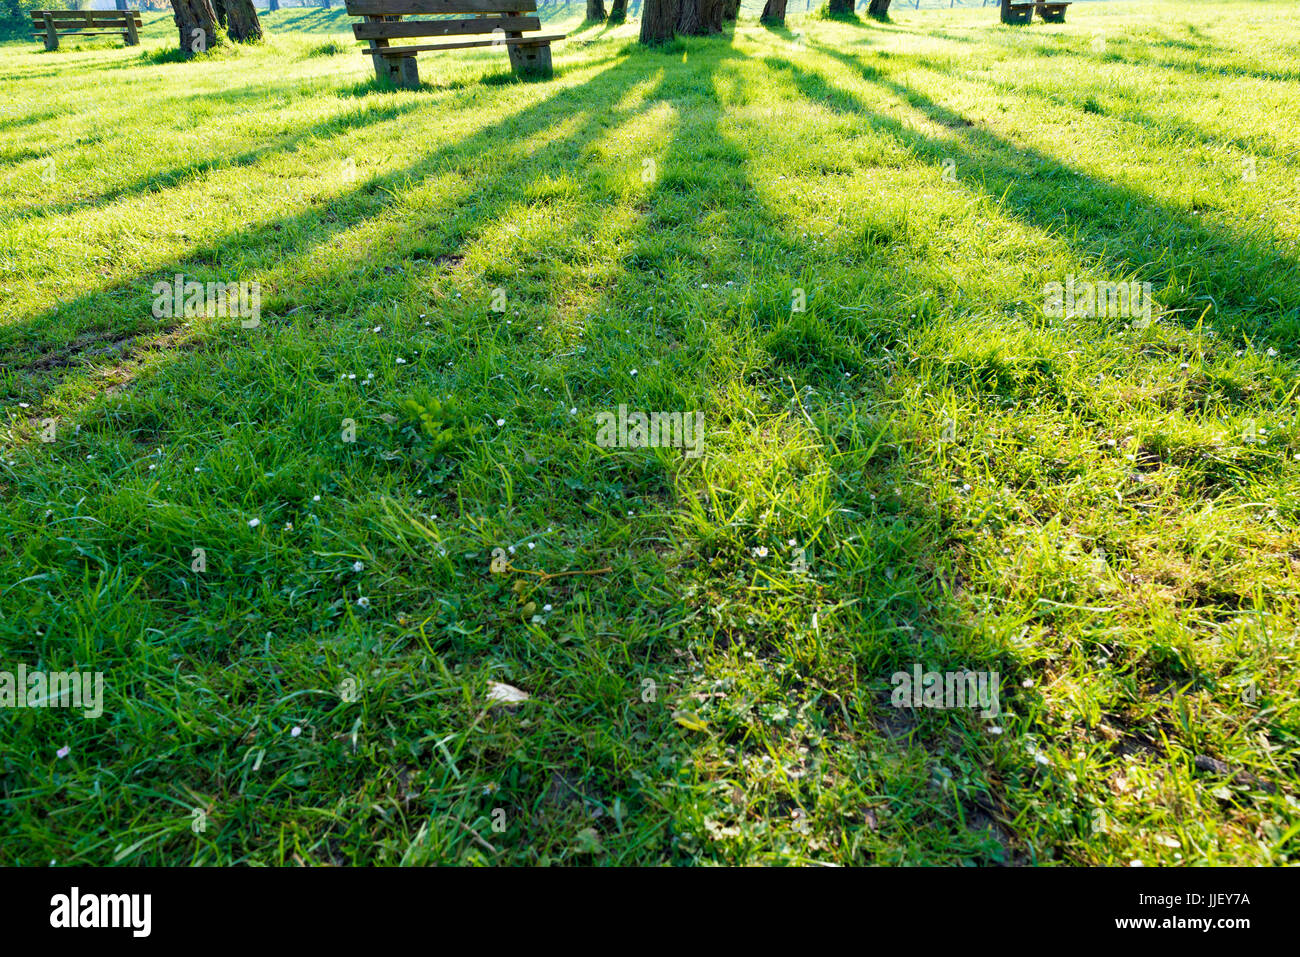 Schatten eines Baumes auf einem grünen Rasen Stockfoto